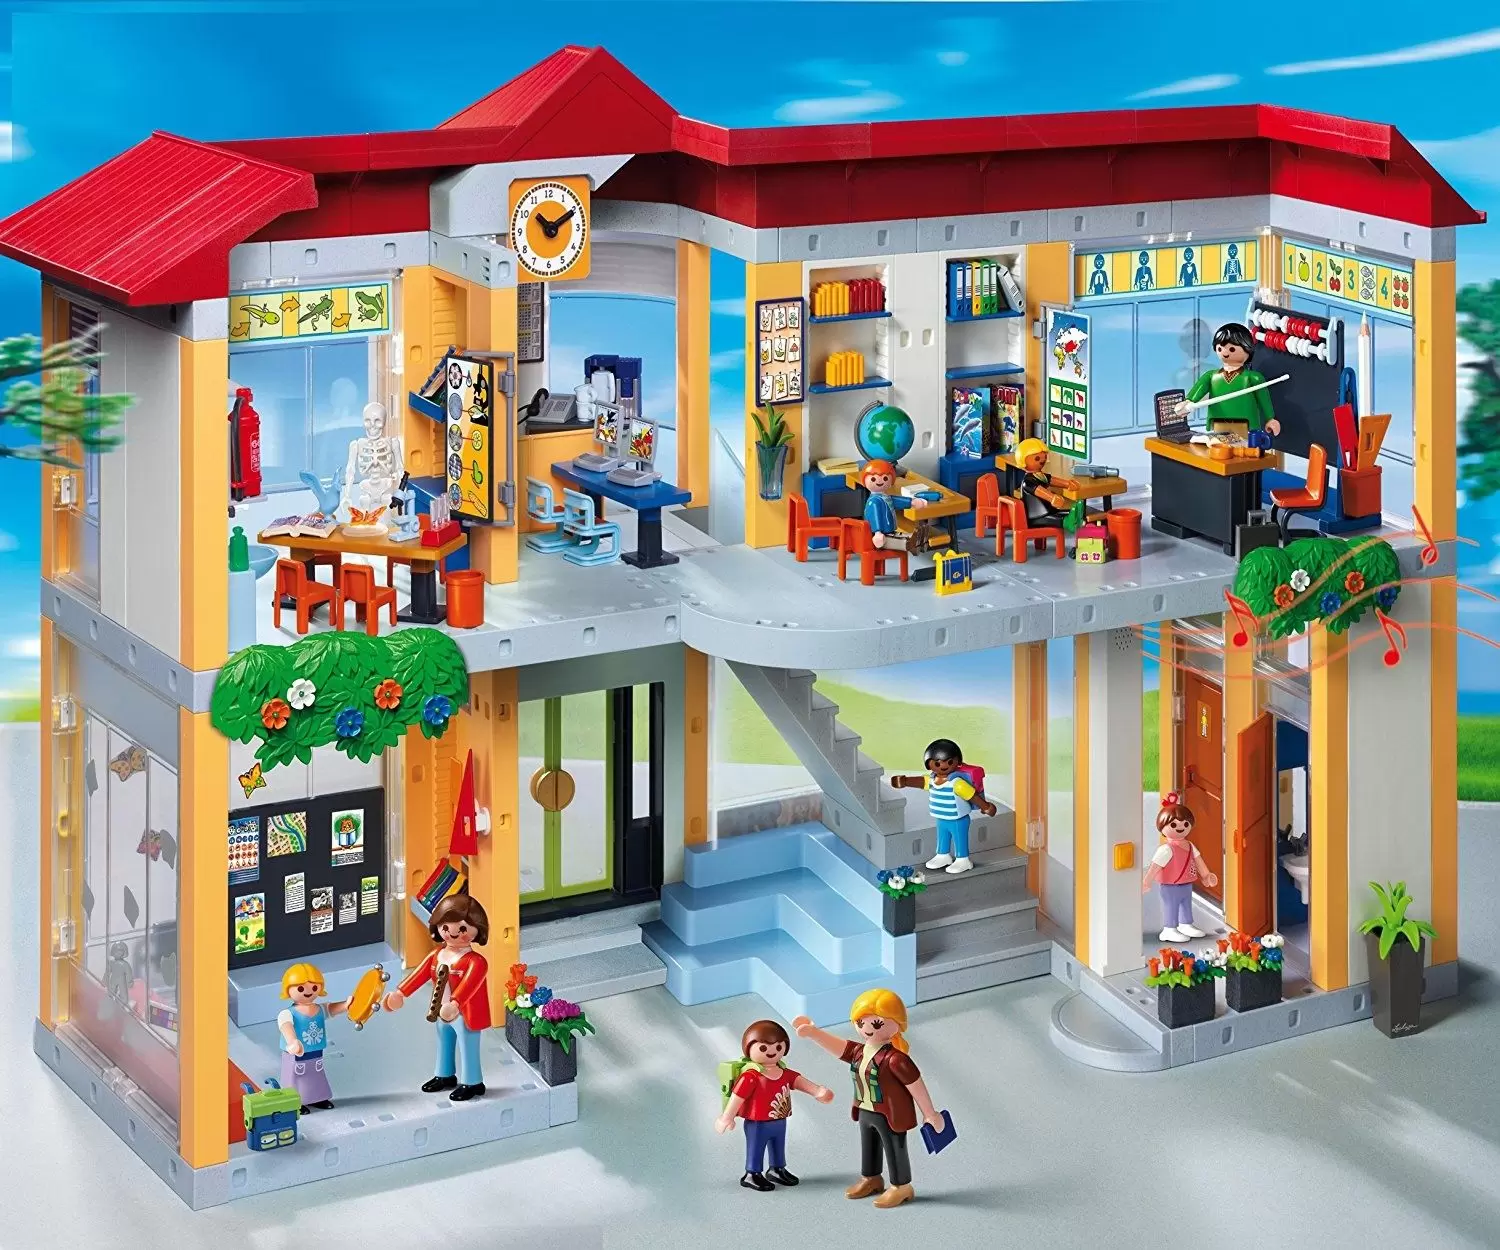 Interpersoonlijk fonds De volgende Furnished School Building - Playmobil in the City 4324